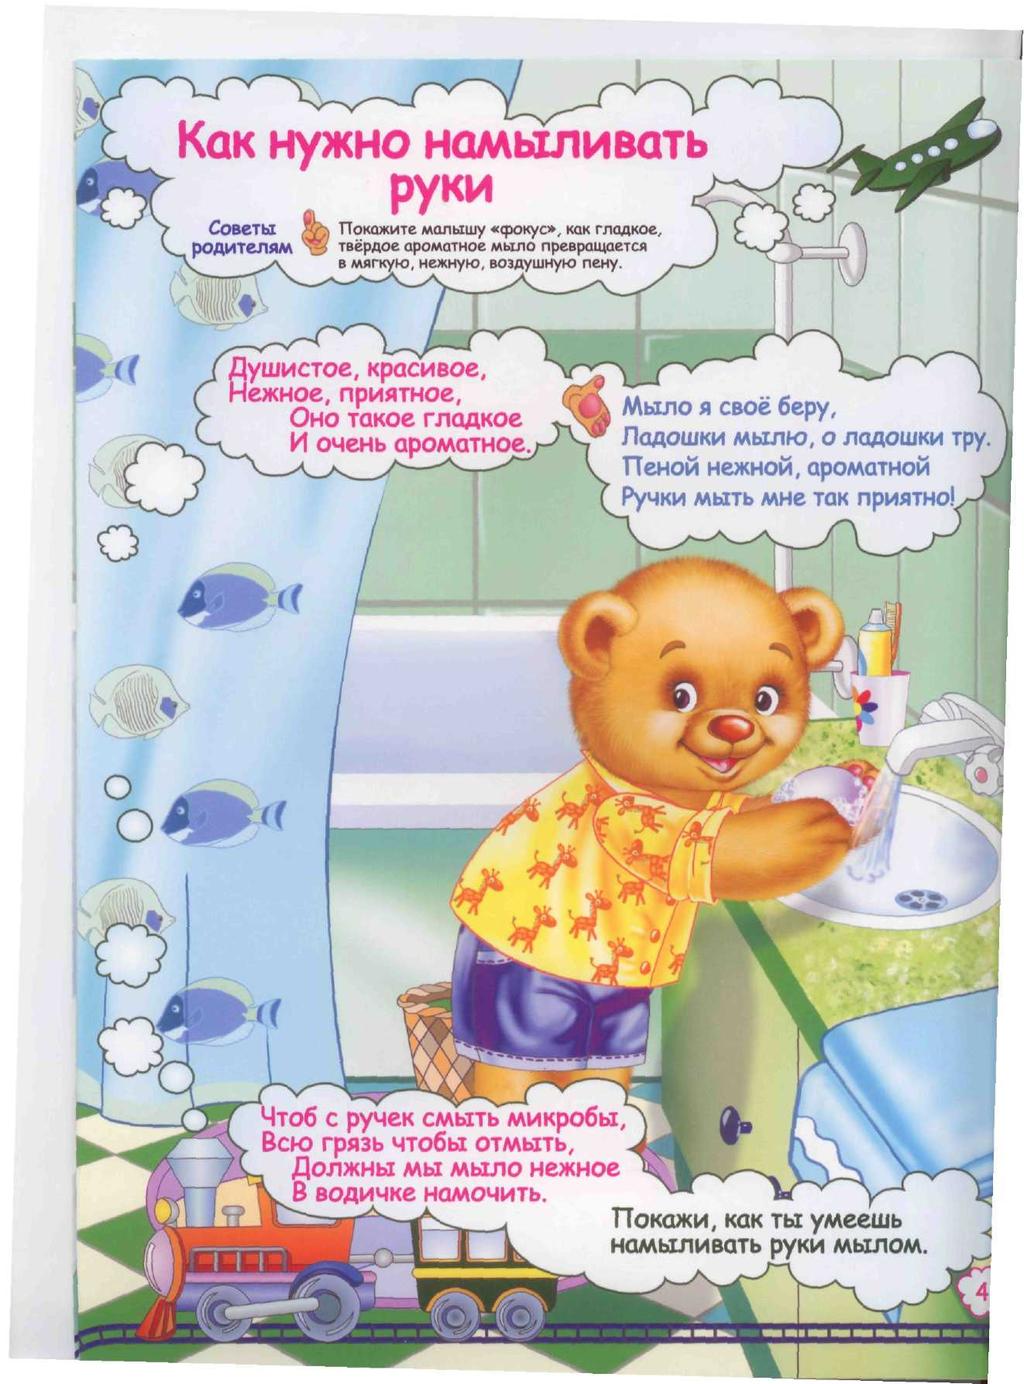 Ребенок не хочет мыть руки: что делать? 20+1 способ заставить малыша вымыть руки. советы психолога